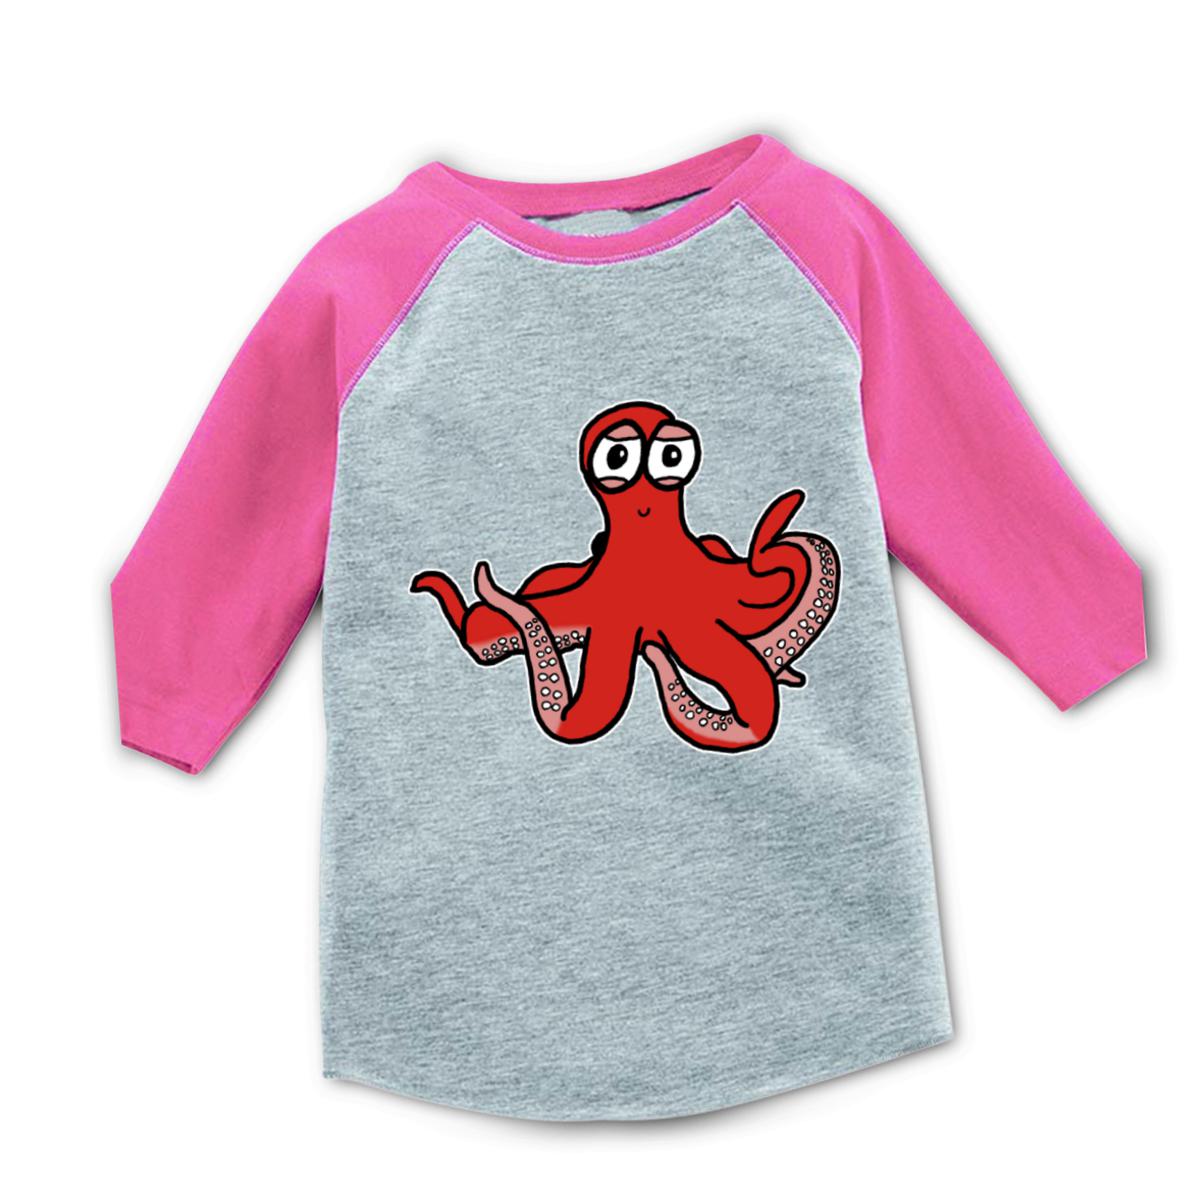 Octopus Toddler Raglan Tee 56T heather-pink